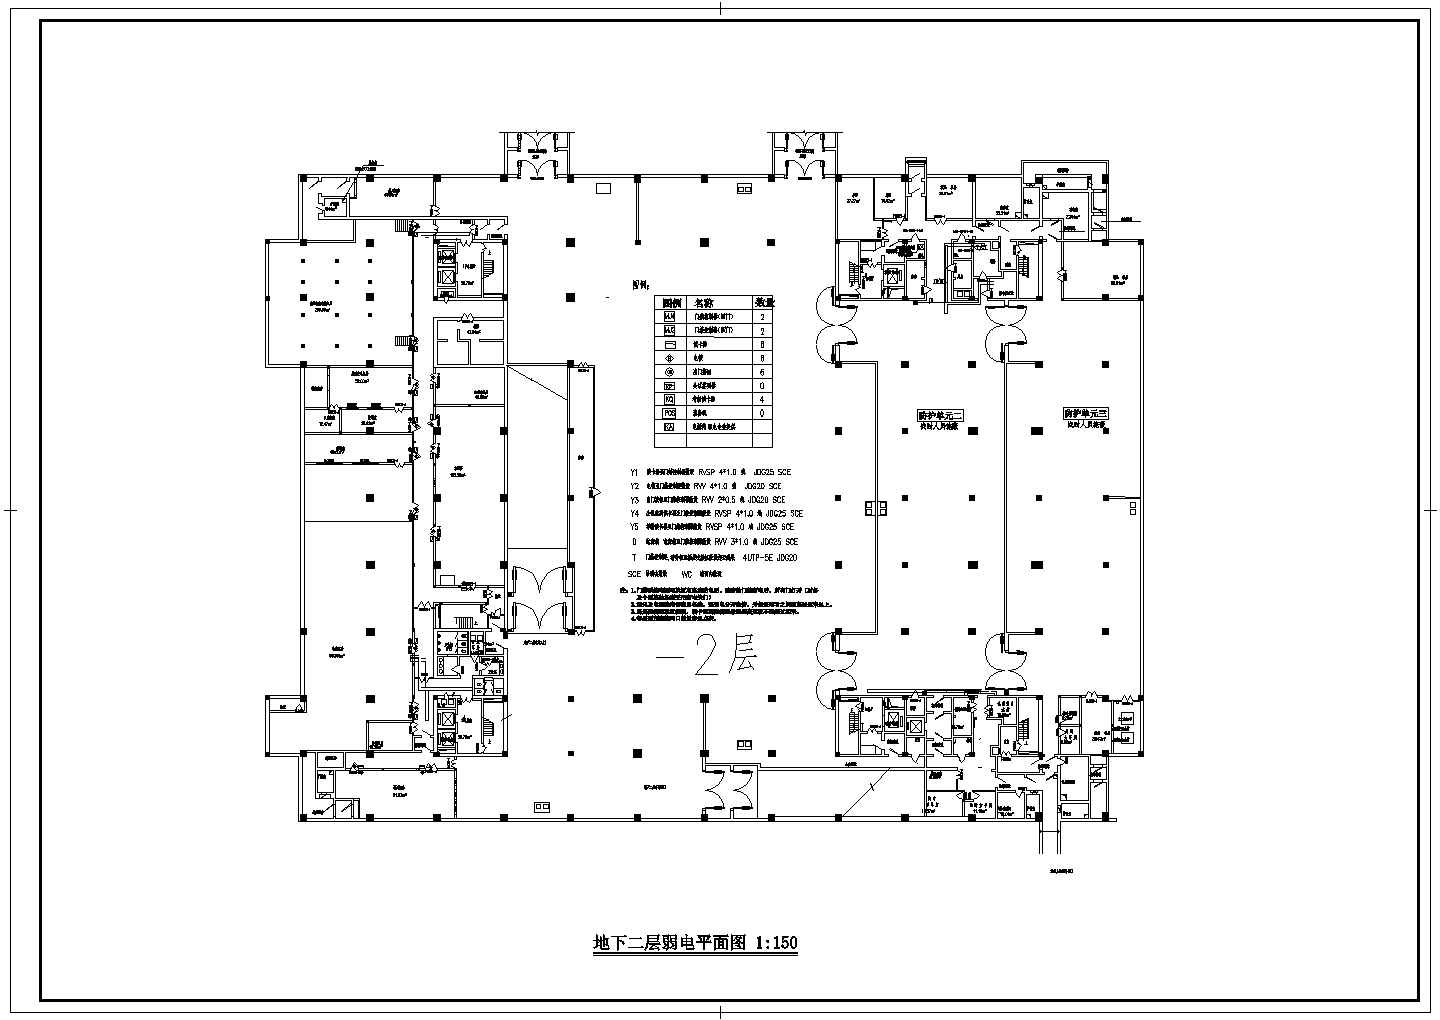 十三层综合办公楼弱电系统及平面图纸